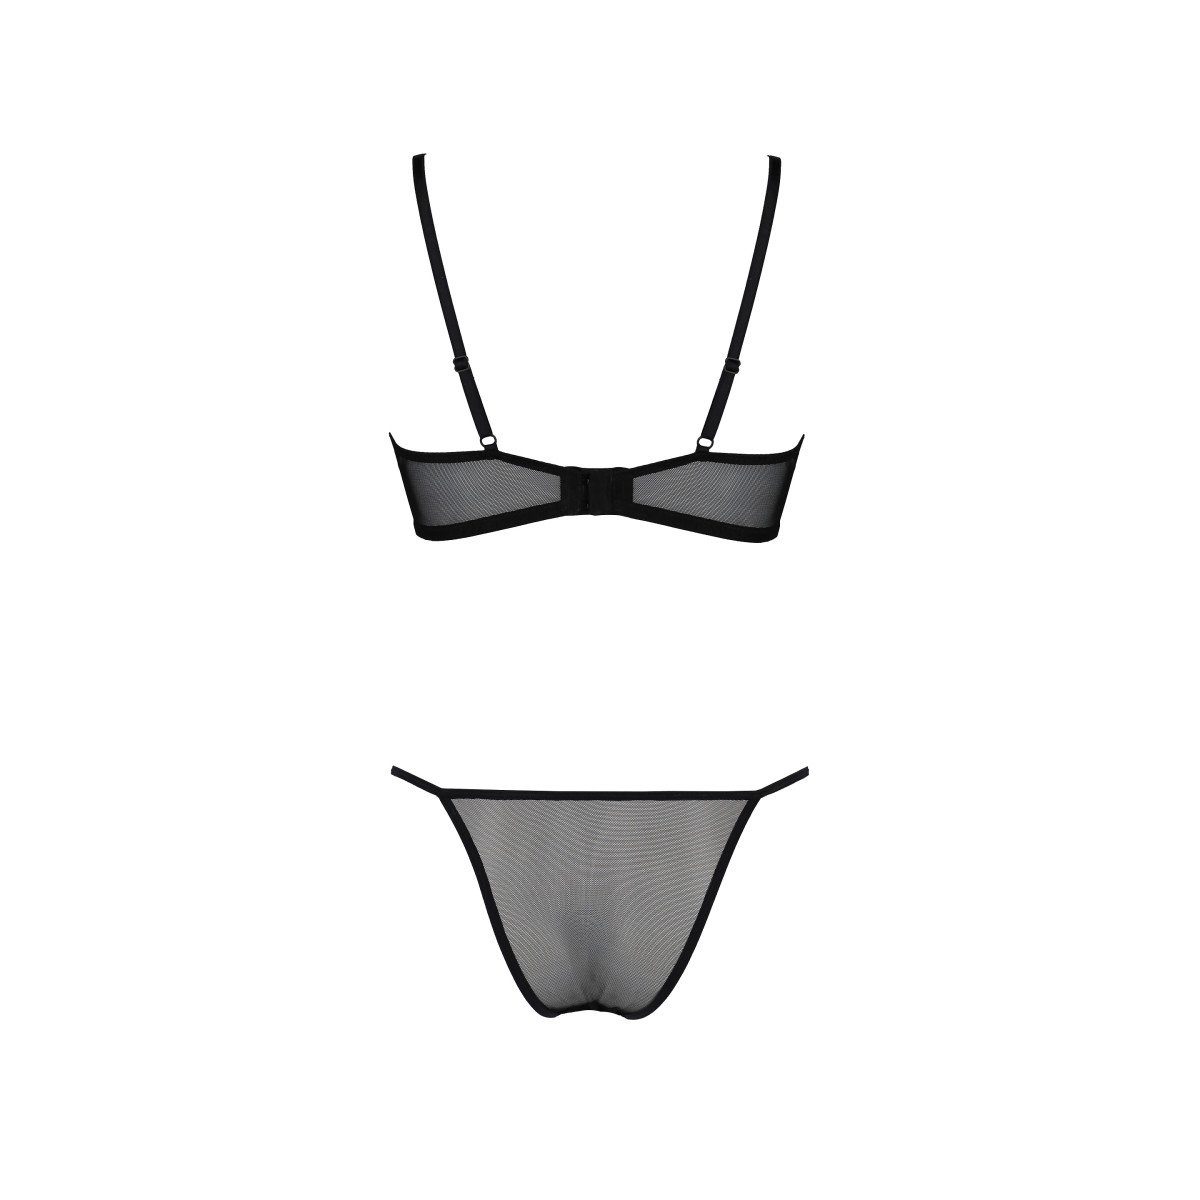 - Eco Selaginella (L/XL,S/M,XXL) Bustier PE Passion black ECO Collection bikini